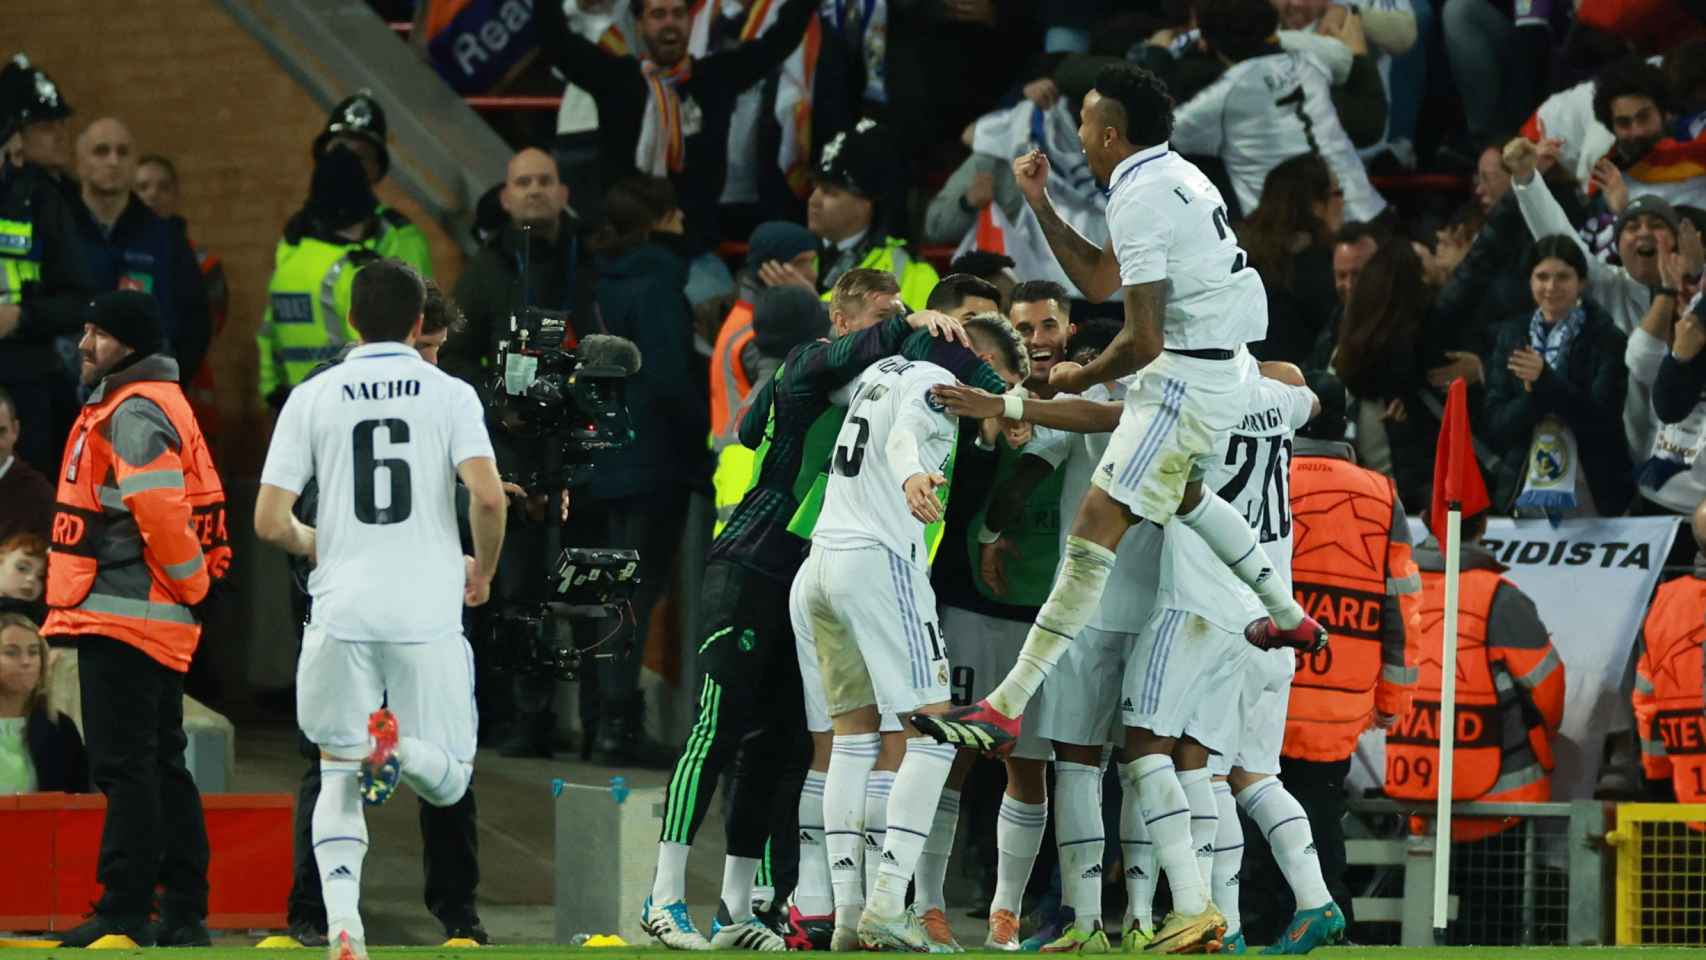 Piña de los jugadores del Real Madrid, celebrando el 2-5 al Liverpool tras el gol de Benzema